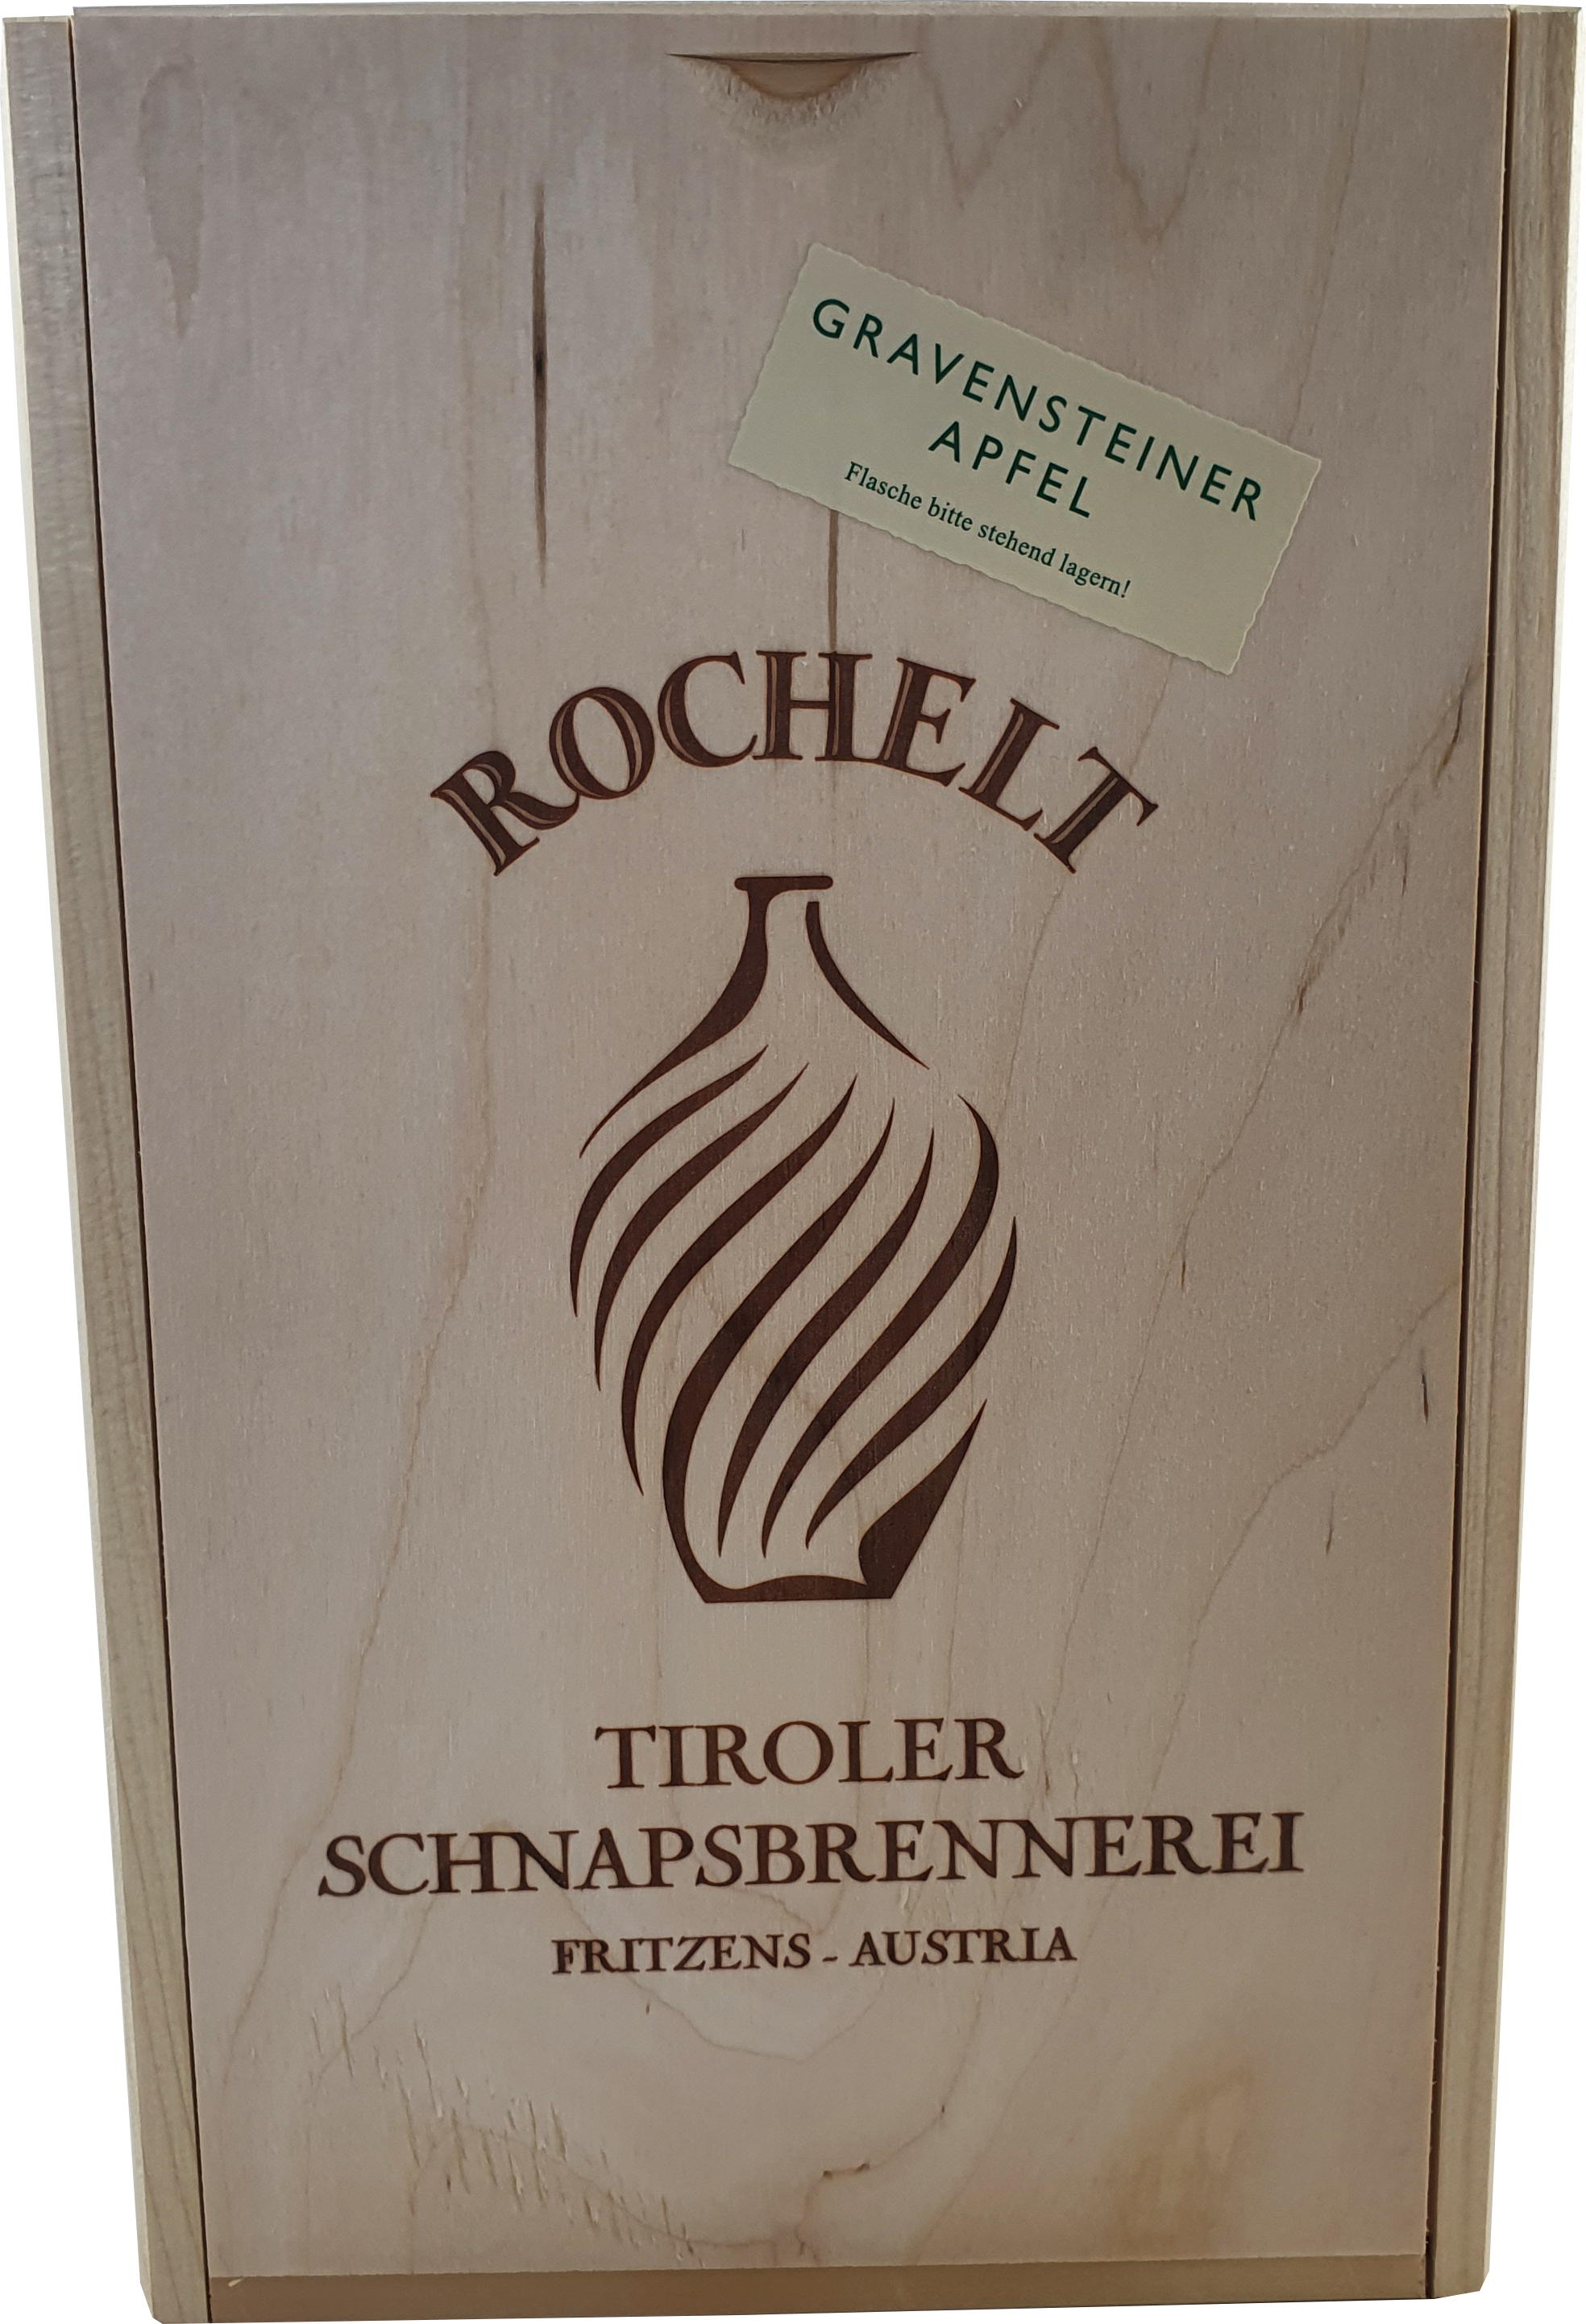 Rochelt Gravensteiner Apfel 50 % 0,7 l